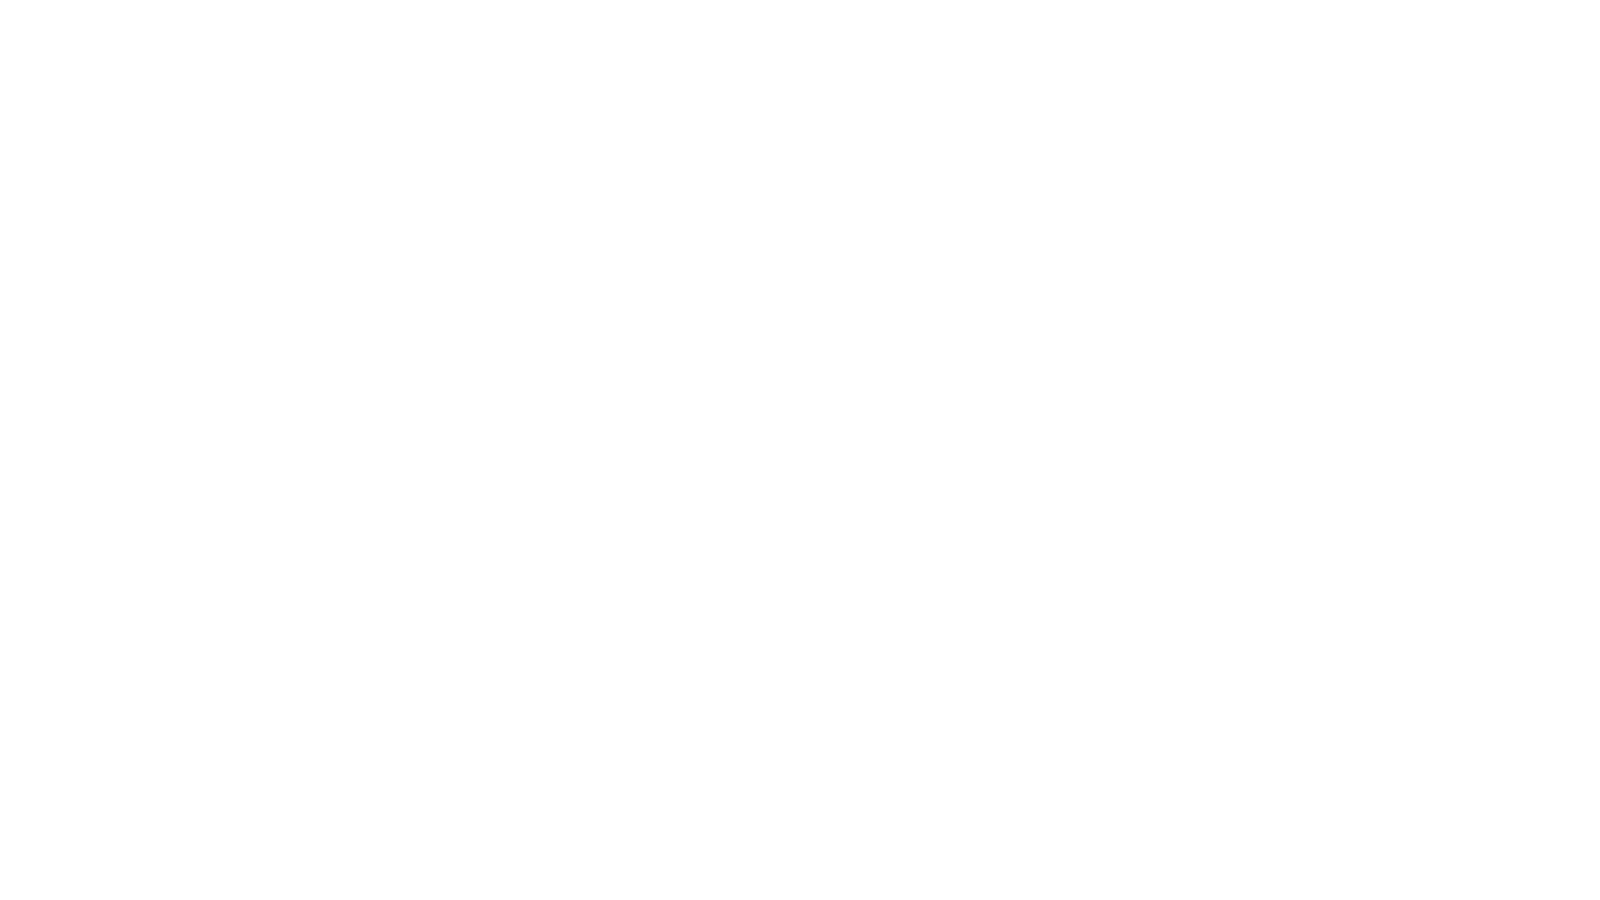 Главный тренер «Тобола» Милан Миланович прокомментировал матч 21-го тура Olimpbet-Чемпионата Казахстана против «Шахтера»

Подпишитесь на новые видео о "Тоболе" - http://goo.gl/wgTnWP

Наши социальные сети:
Instagram - http://instagram.com/fctobol
TikTok - https://www.tiktok.com/@tobolfc?lang=en
VK - http://vk.com/fctobol
Facebook - http://www.facebook.com/fctobolа
Twitter - http://twitter.com/#!/fctobol